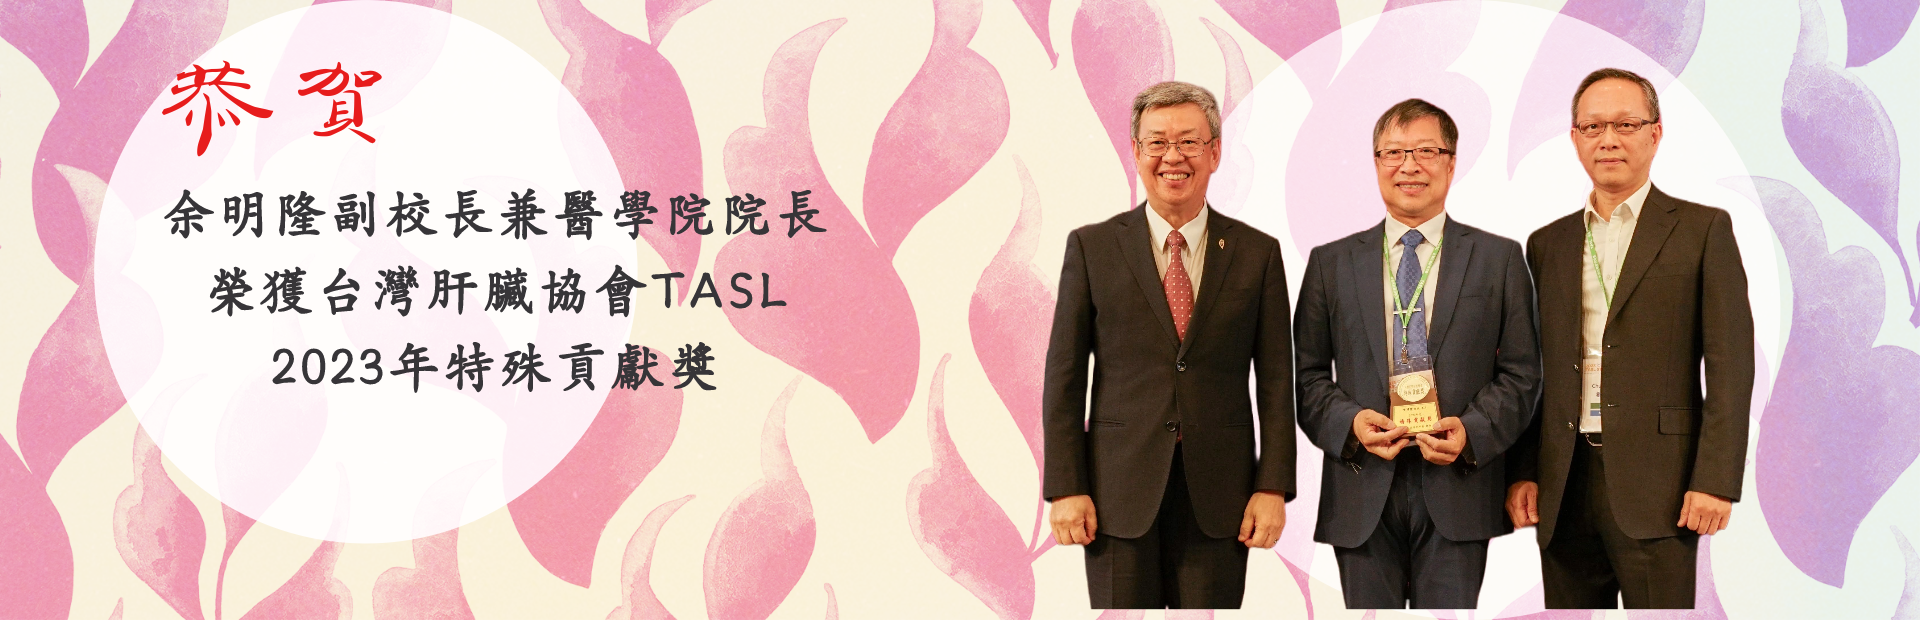 恭賀！余明隆副校長兼醫學院院長榮獲 TASL 2023年特殊貢獻獎